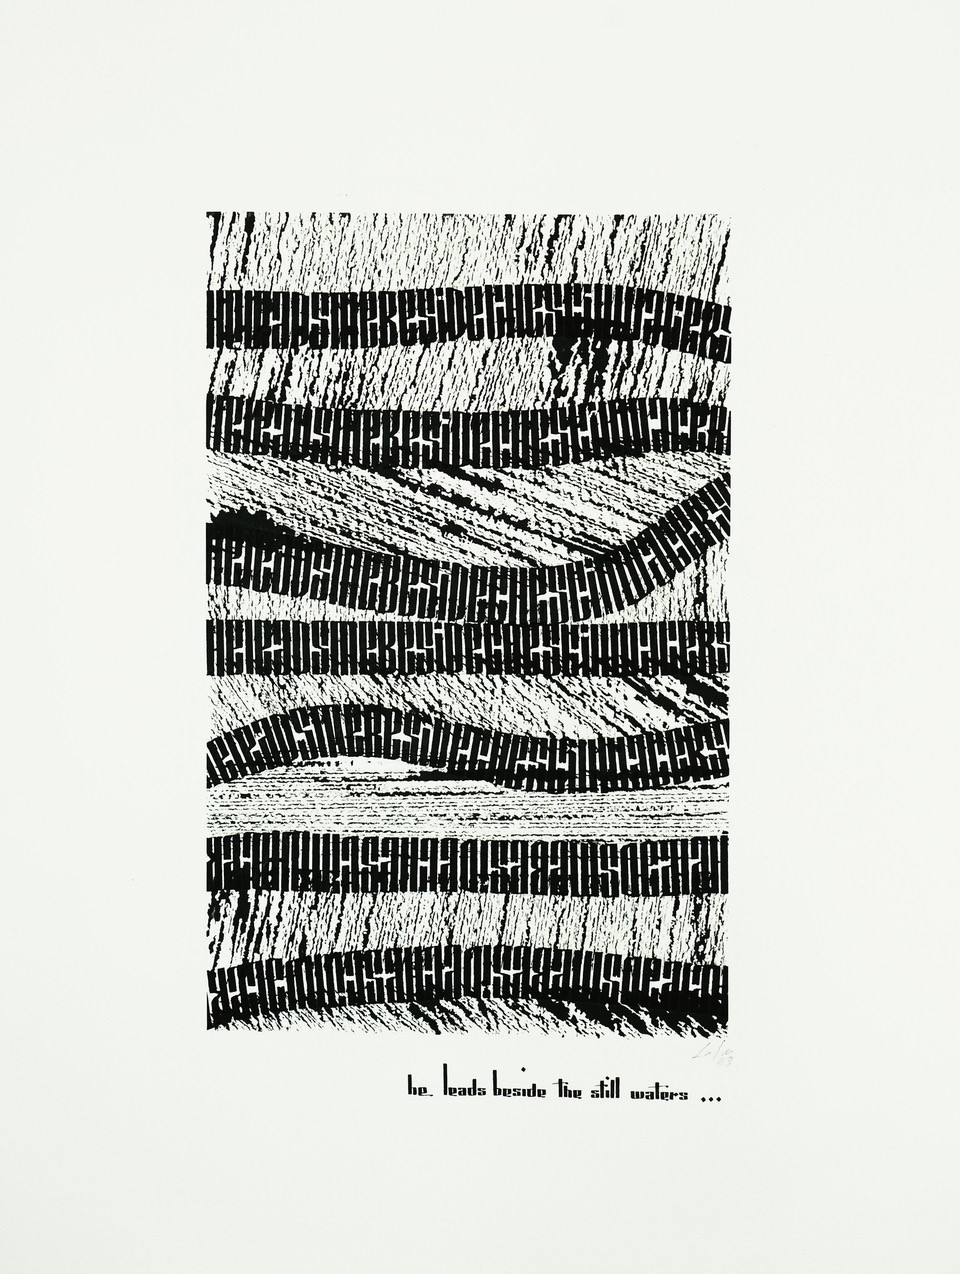 Oeuvre/calligraphie en noir - calligraphies hebraiques par Frank Lalou